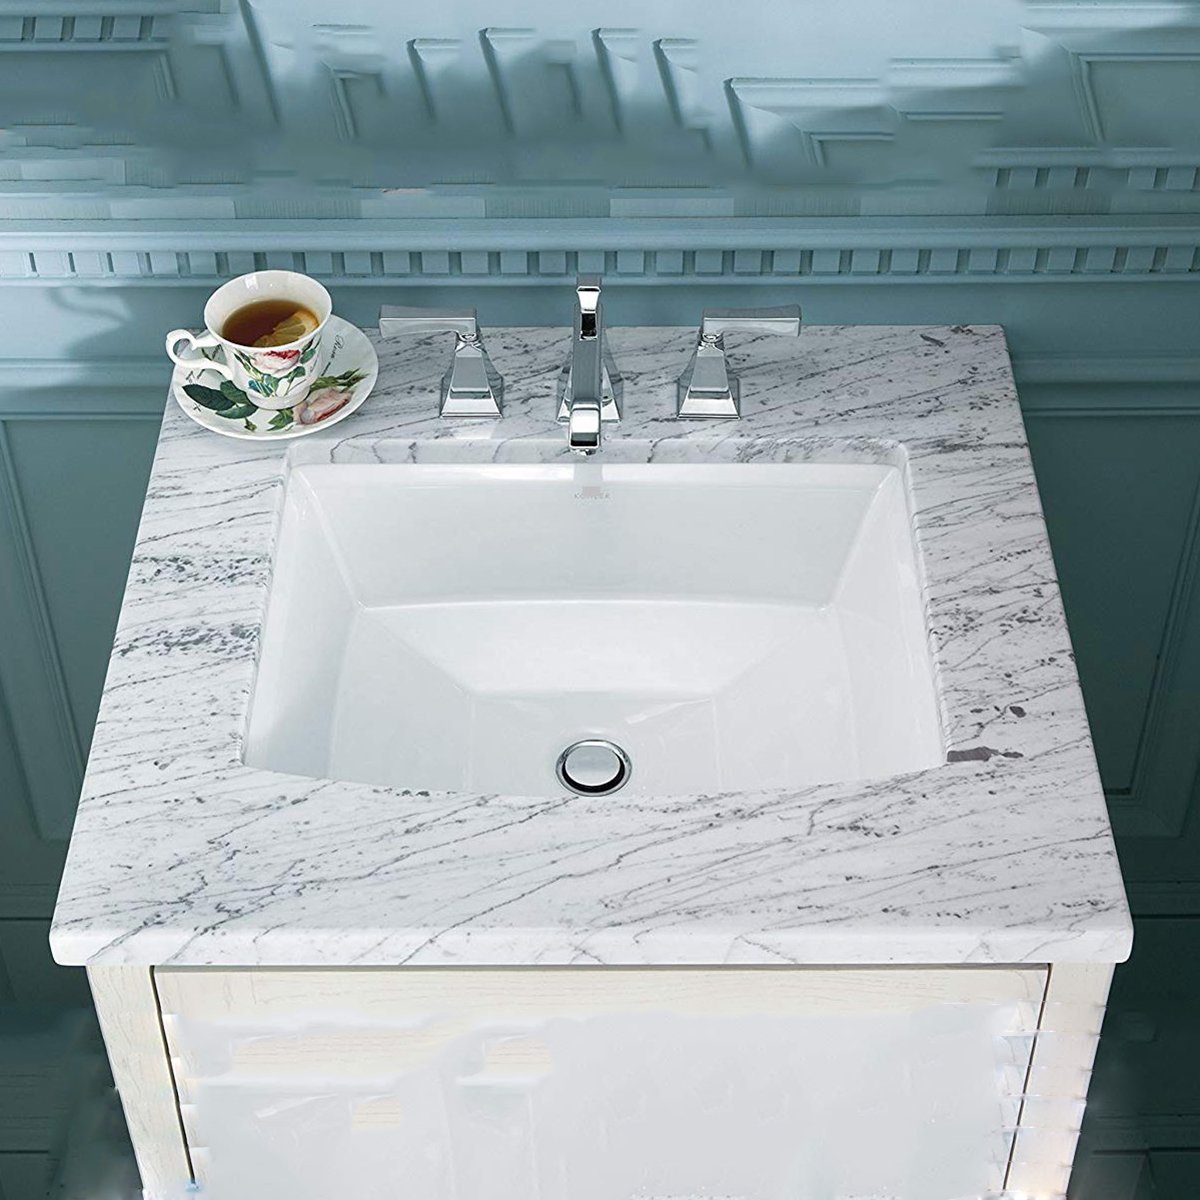 Aquacubic – évier rectangulaire blanc, Design moderne, salle de bains, lavage des mains en céramique, évier sous plan 